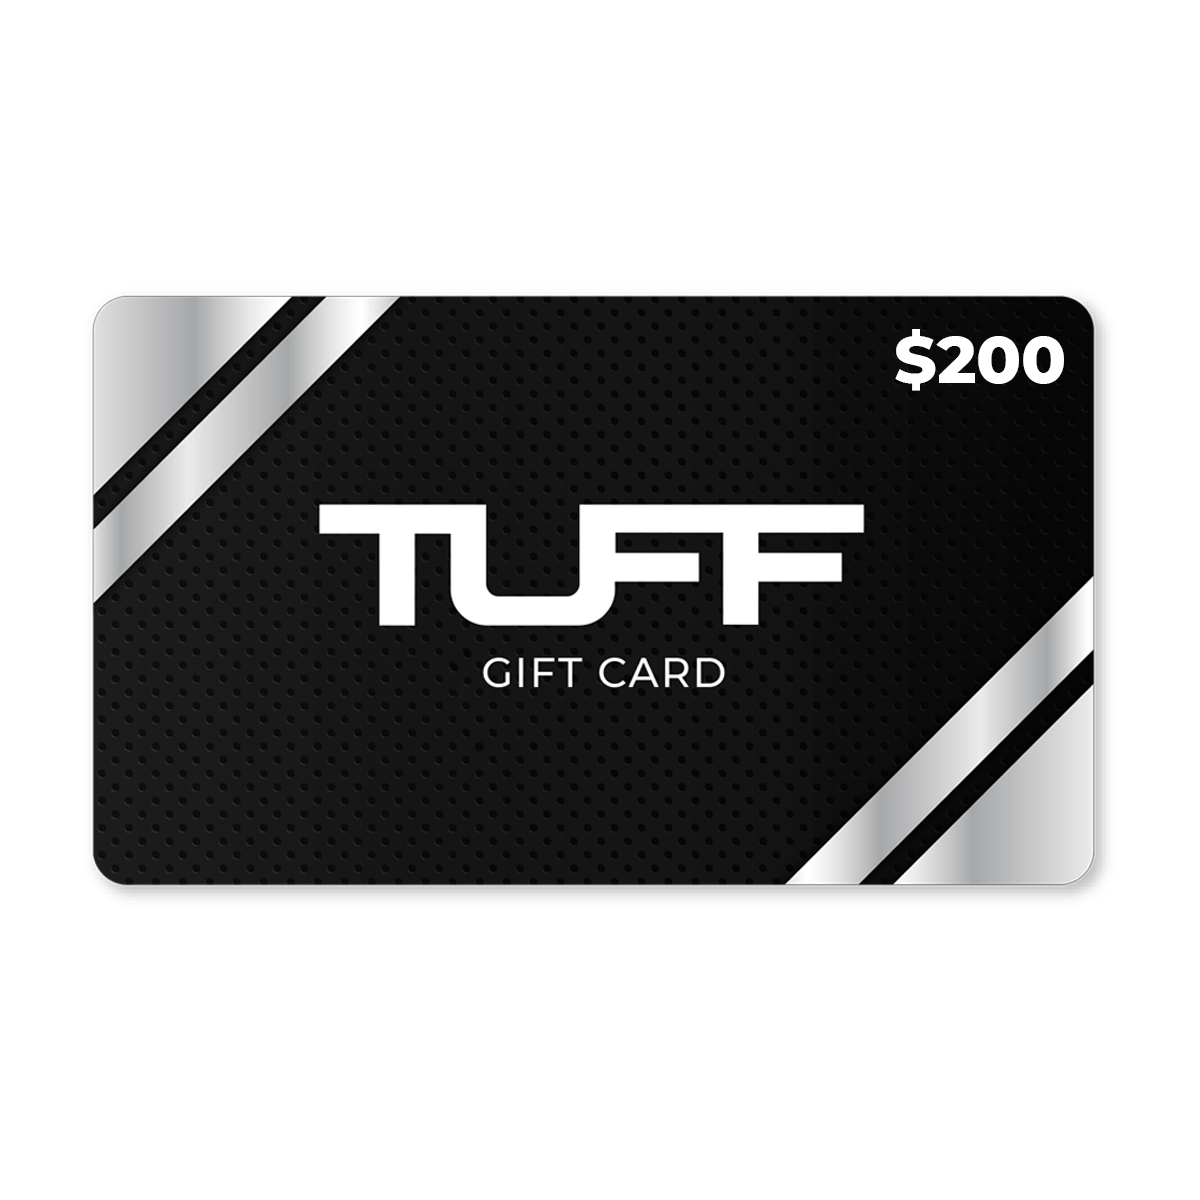 TuffWraps Gift Card $200.00 TUFF Gift Card